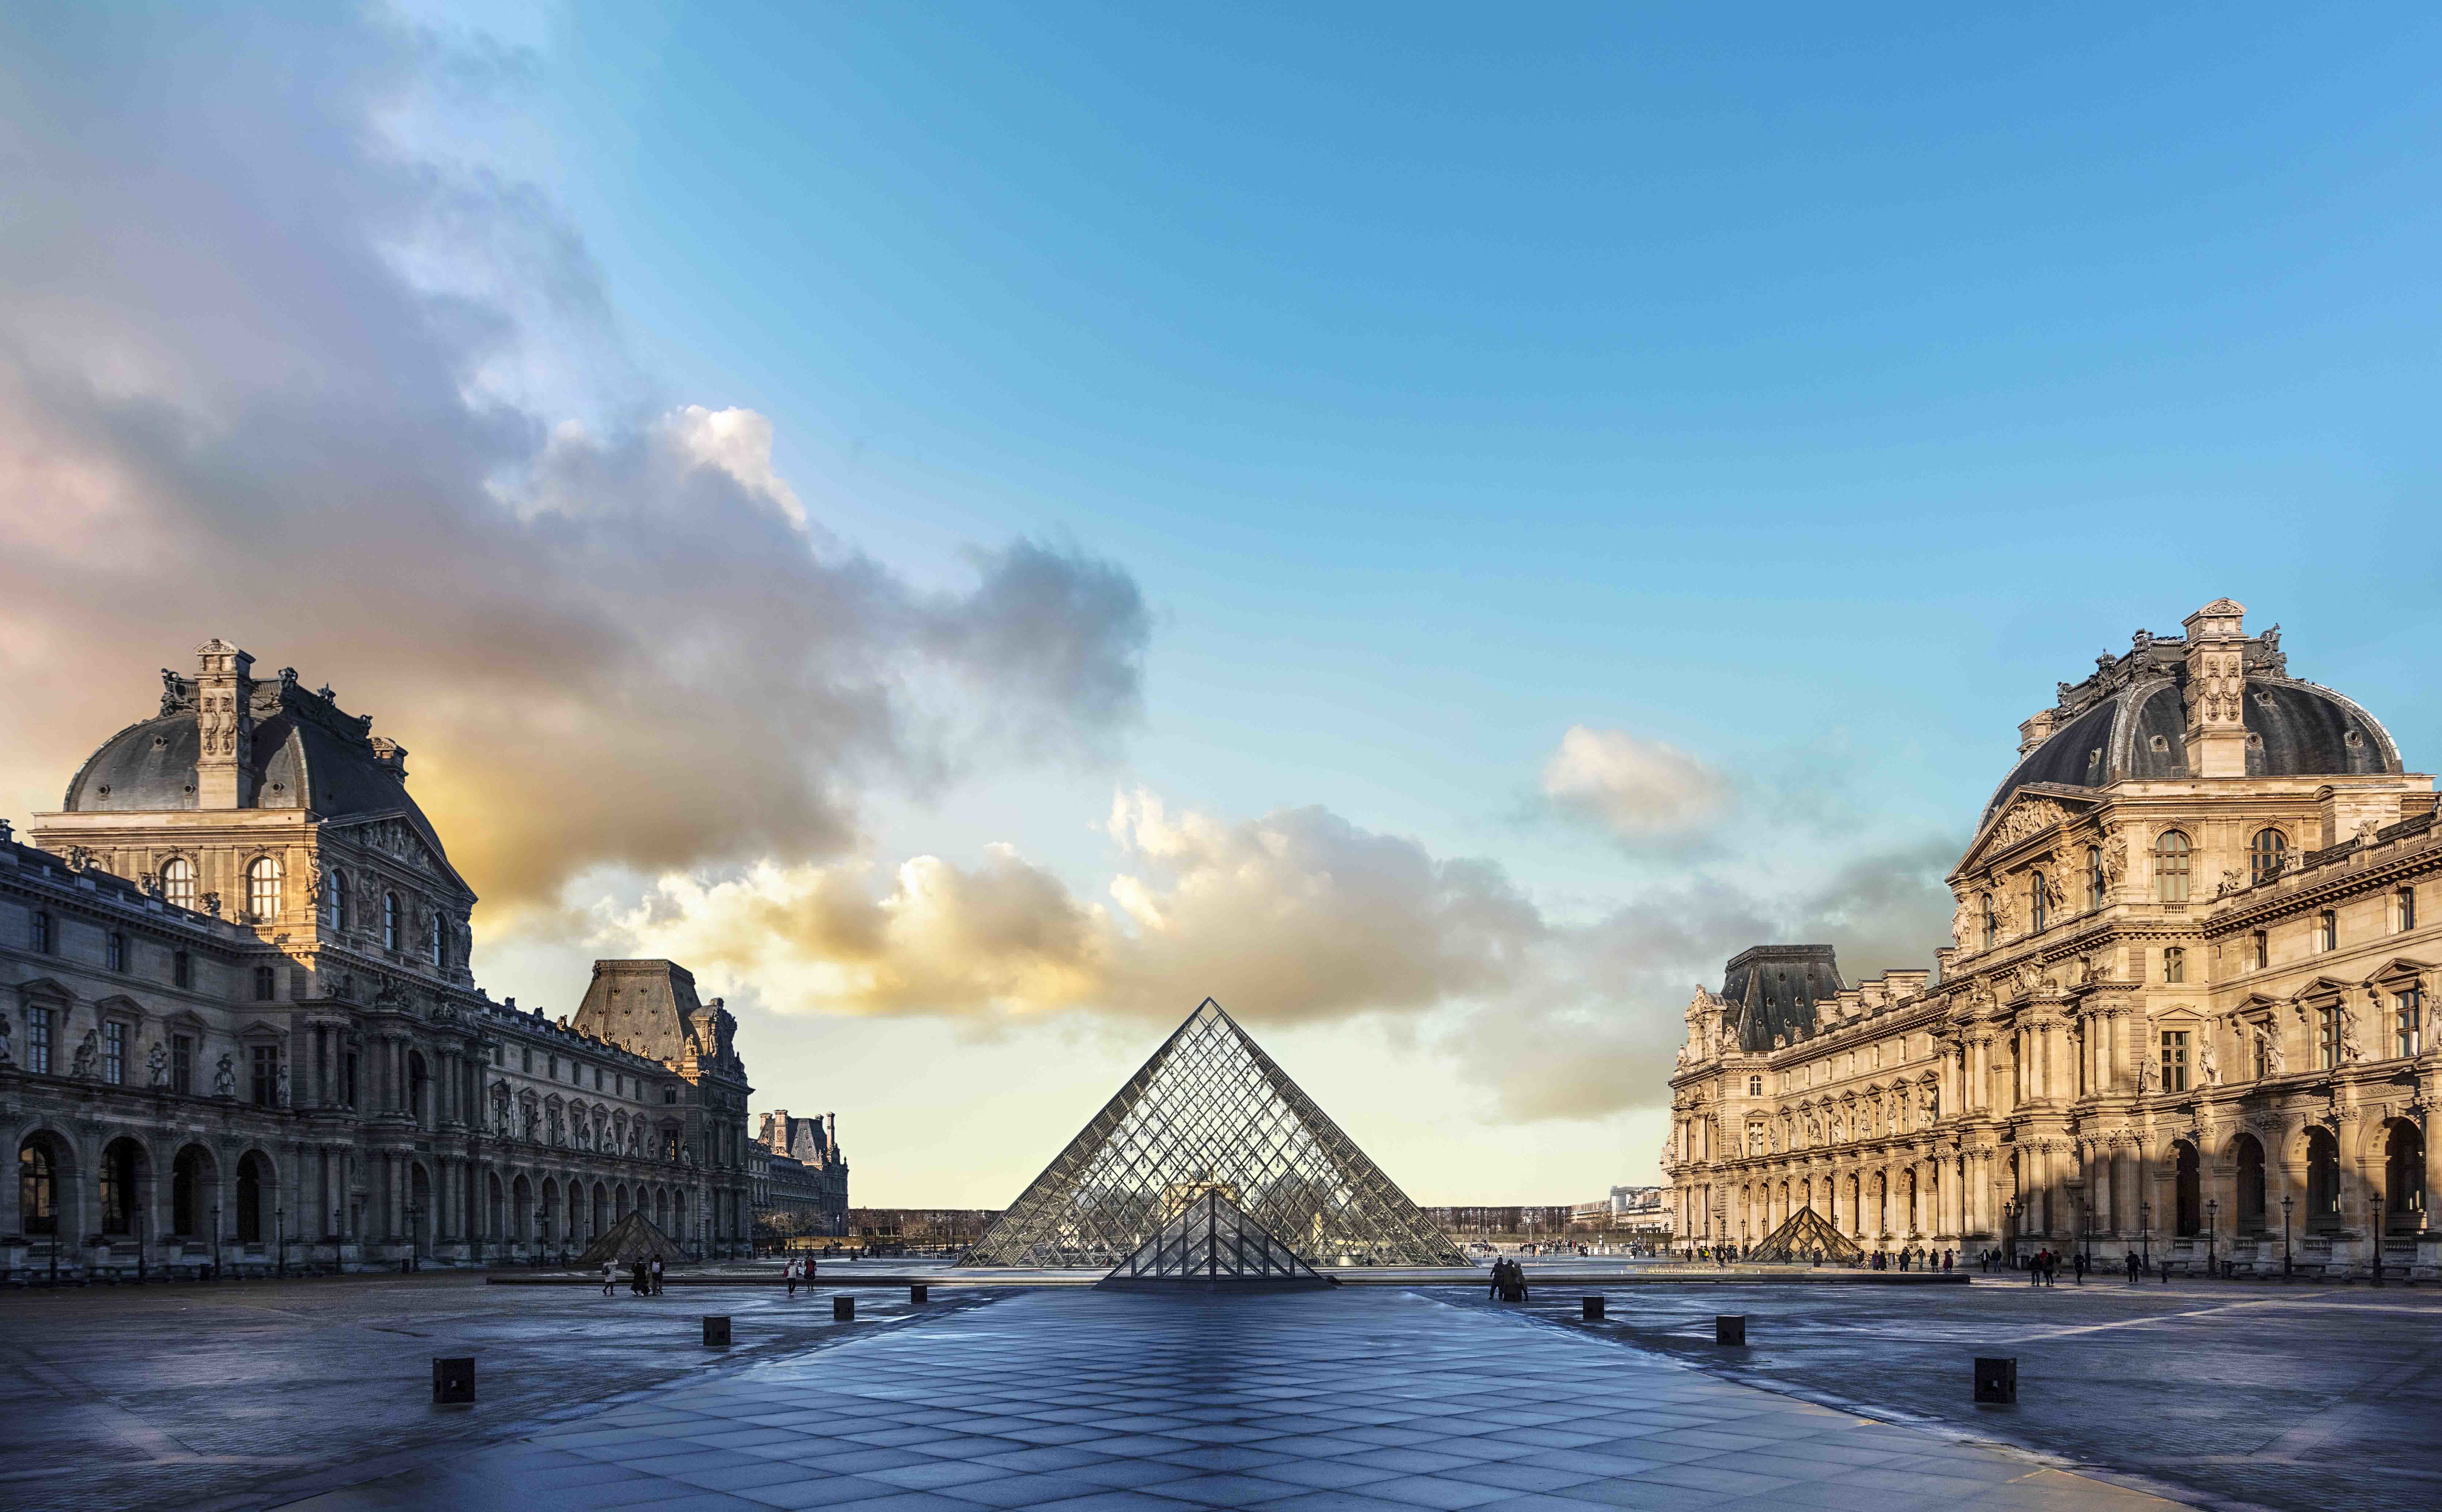 Expérience inoubliable au Musée du Louvre